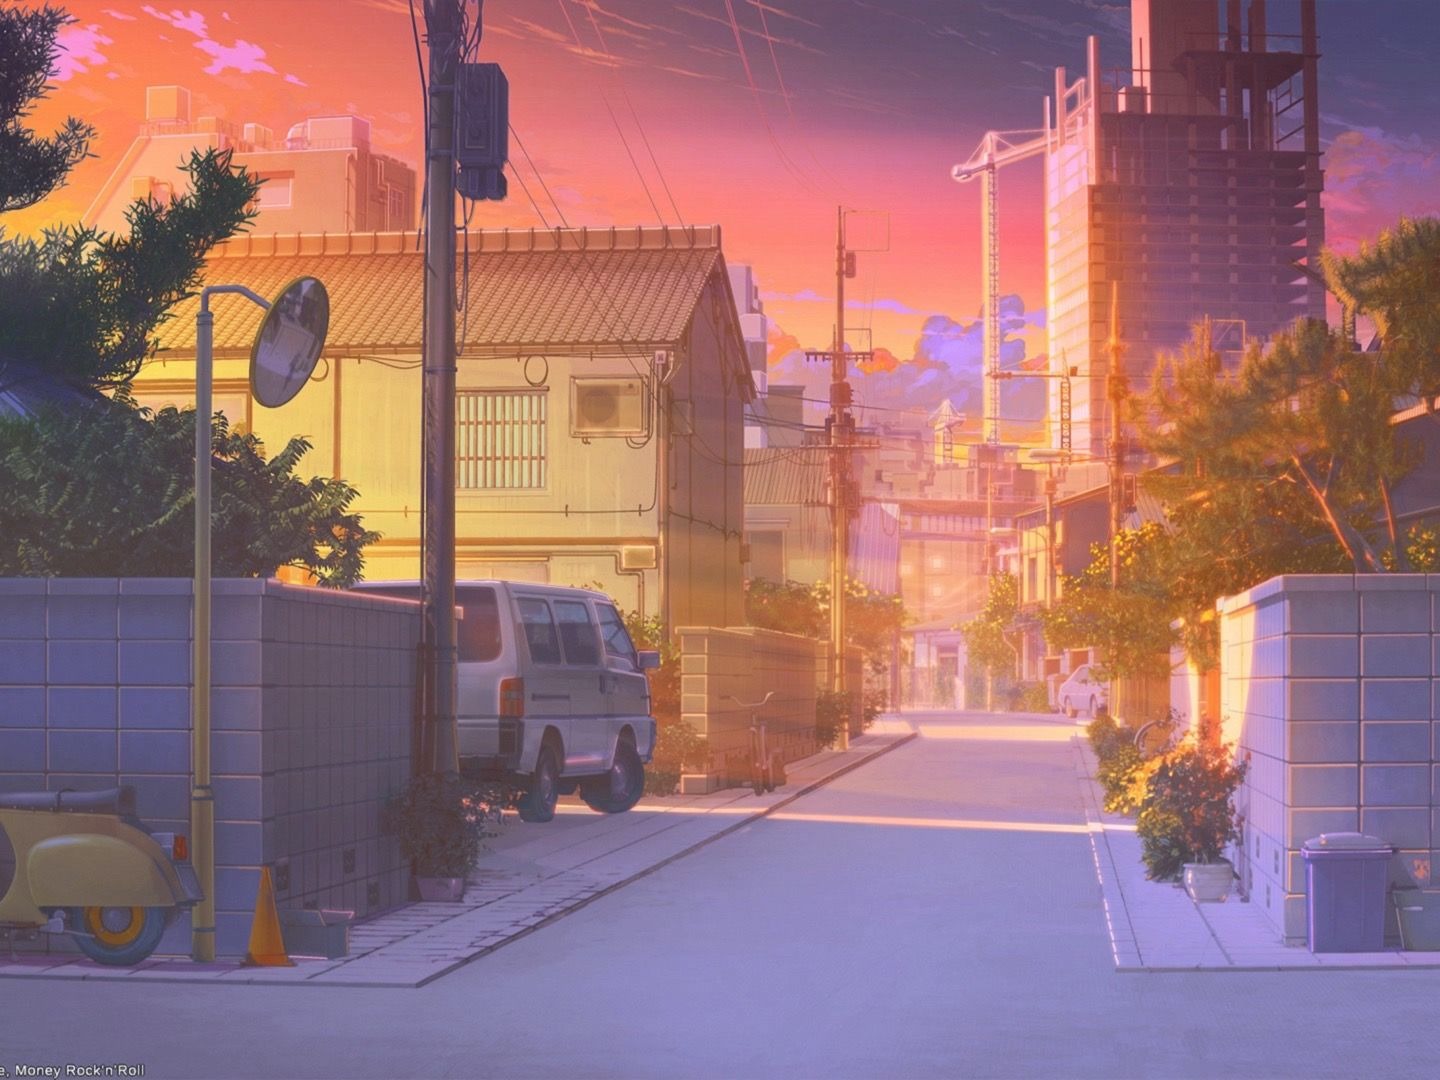 日本动漫街景高清壁纸 - 哔哩哔哩